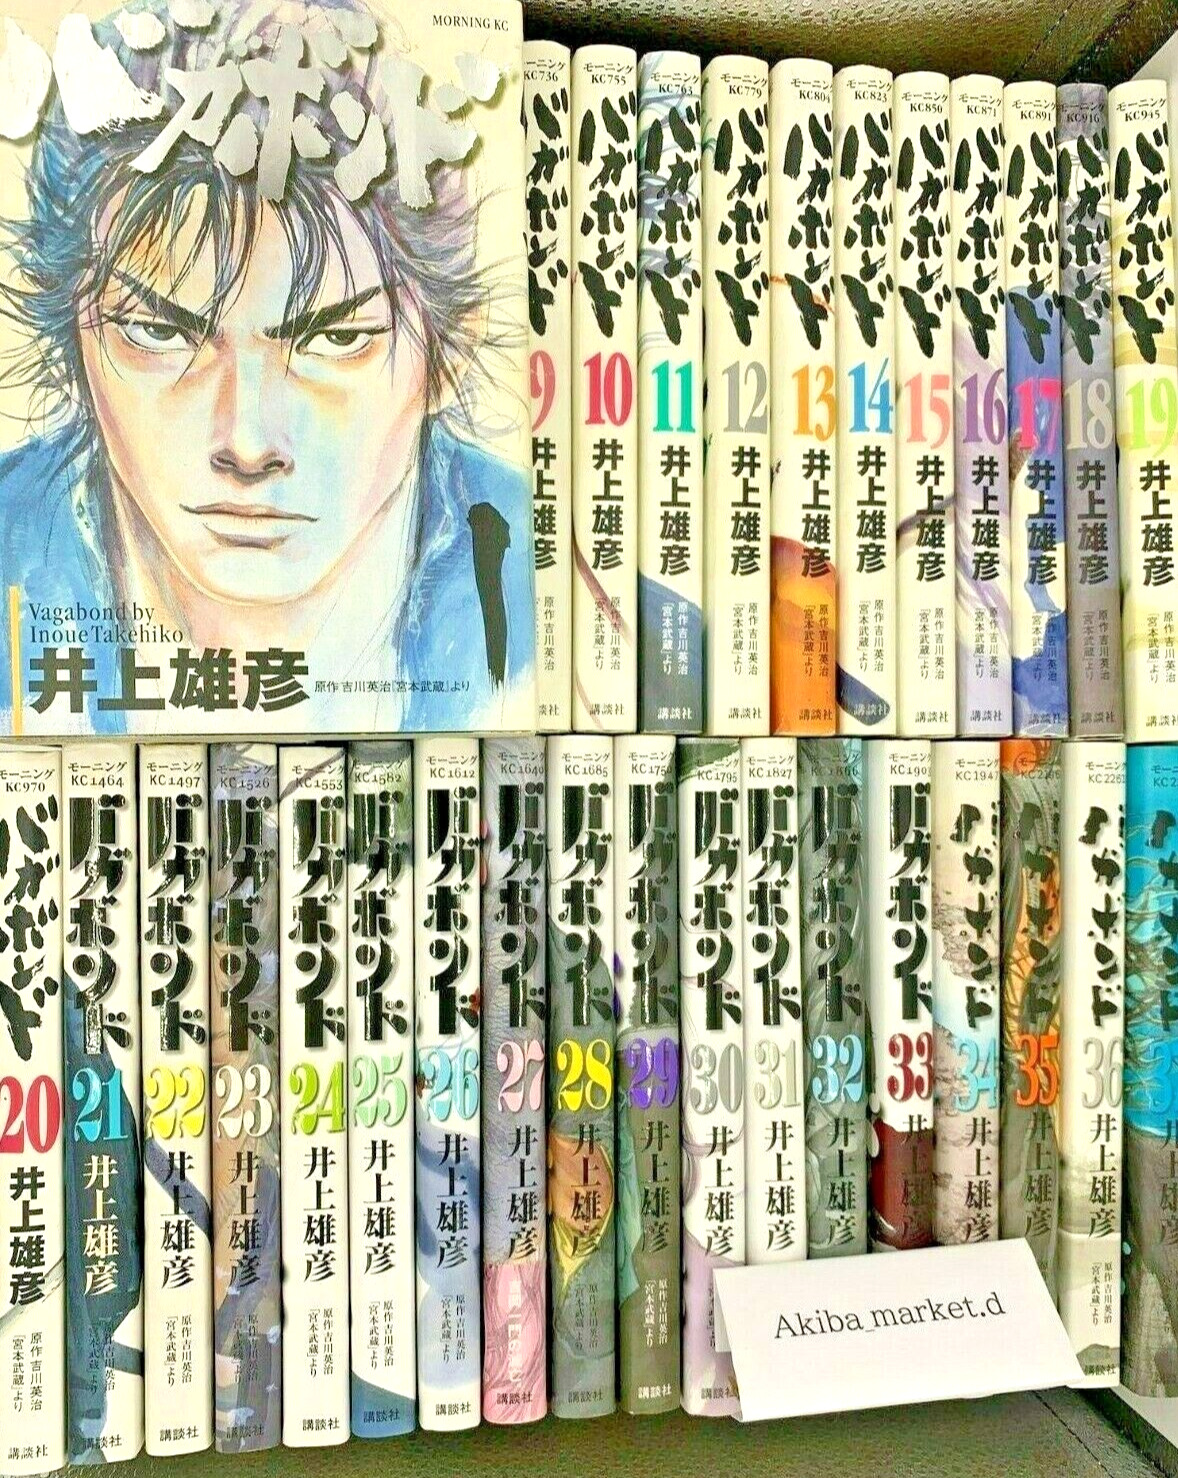 Vagabond  Japanese language  Vol.1-37 Full Set Manga Comics Japanese SLAM DUNK